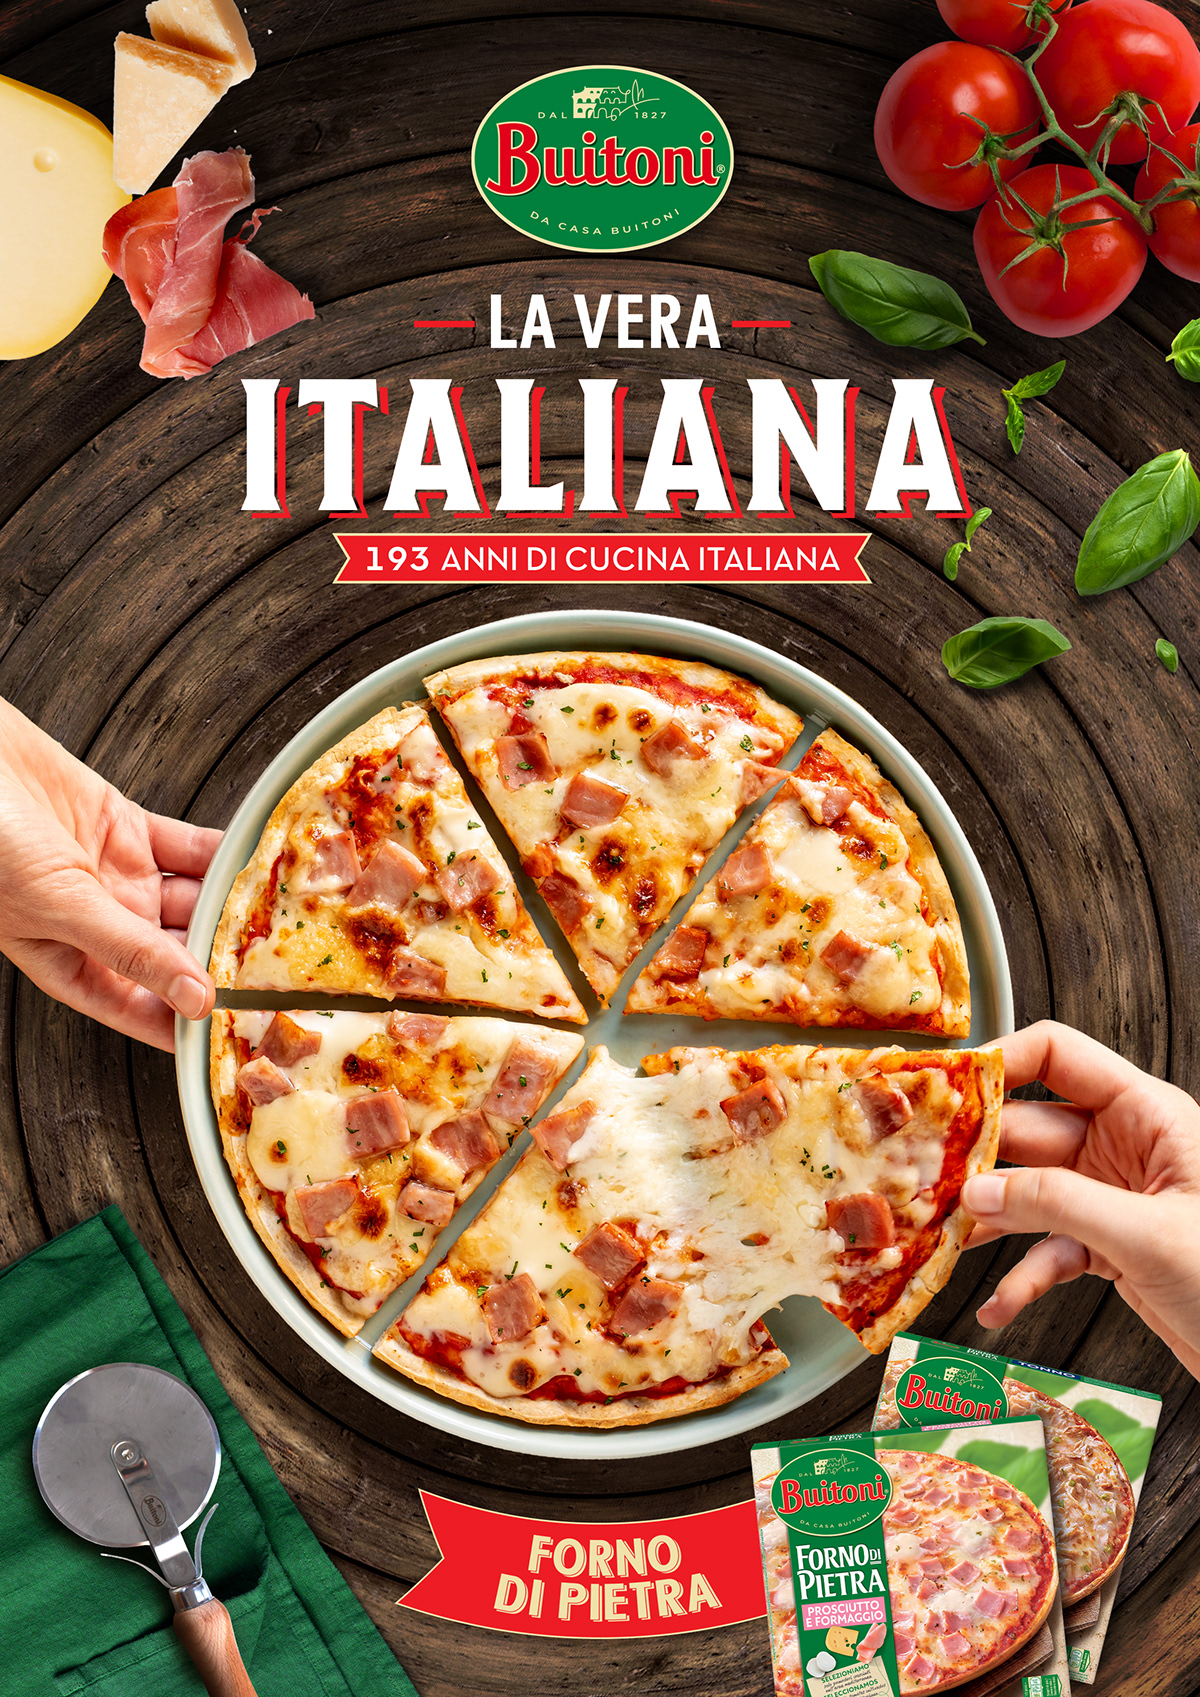 Advertising  buitoni graphic design  Italian food Pizza Propaganda publicidad publicidade